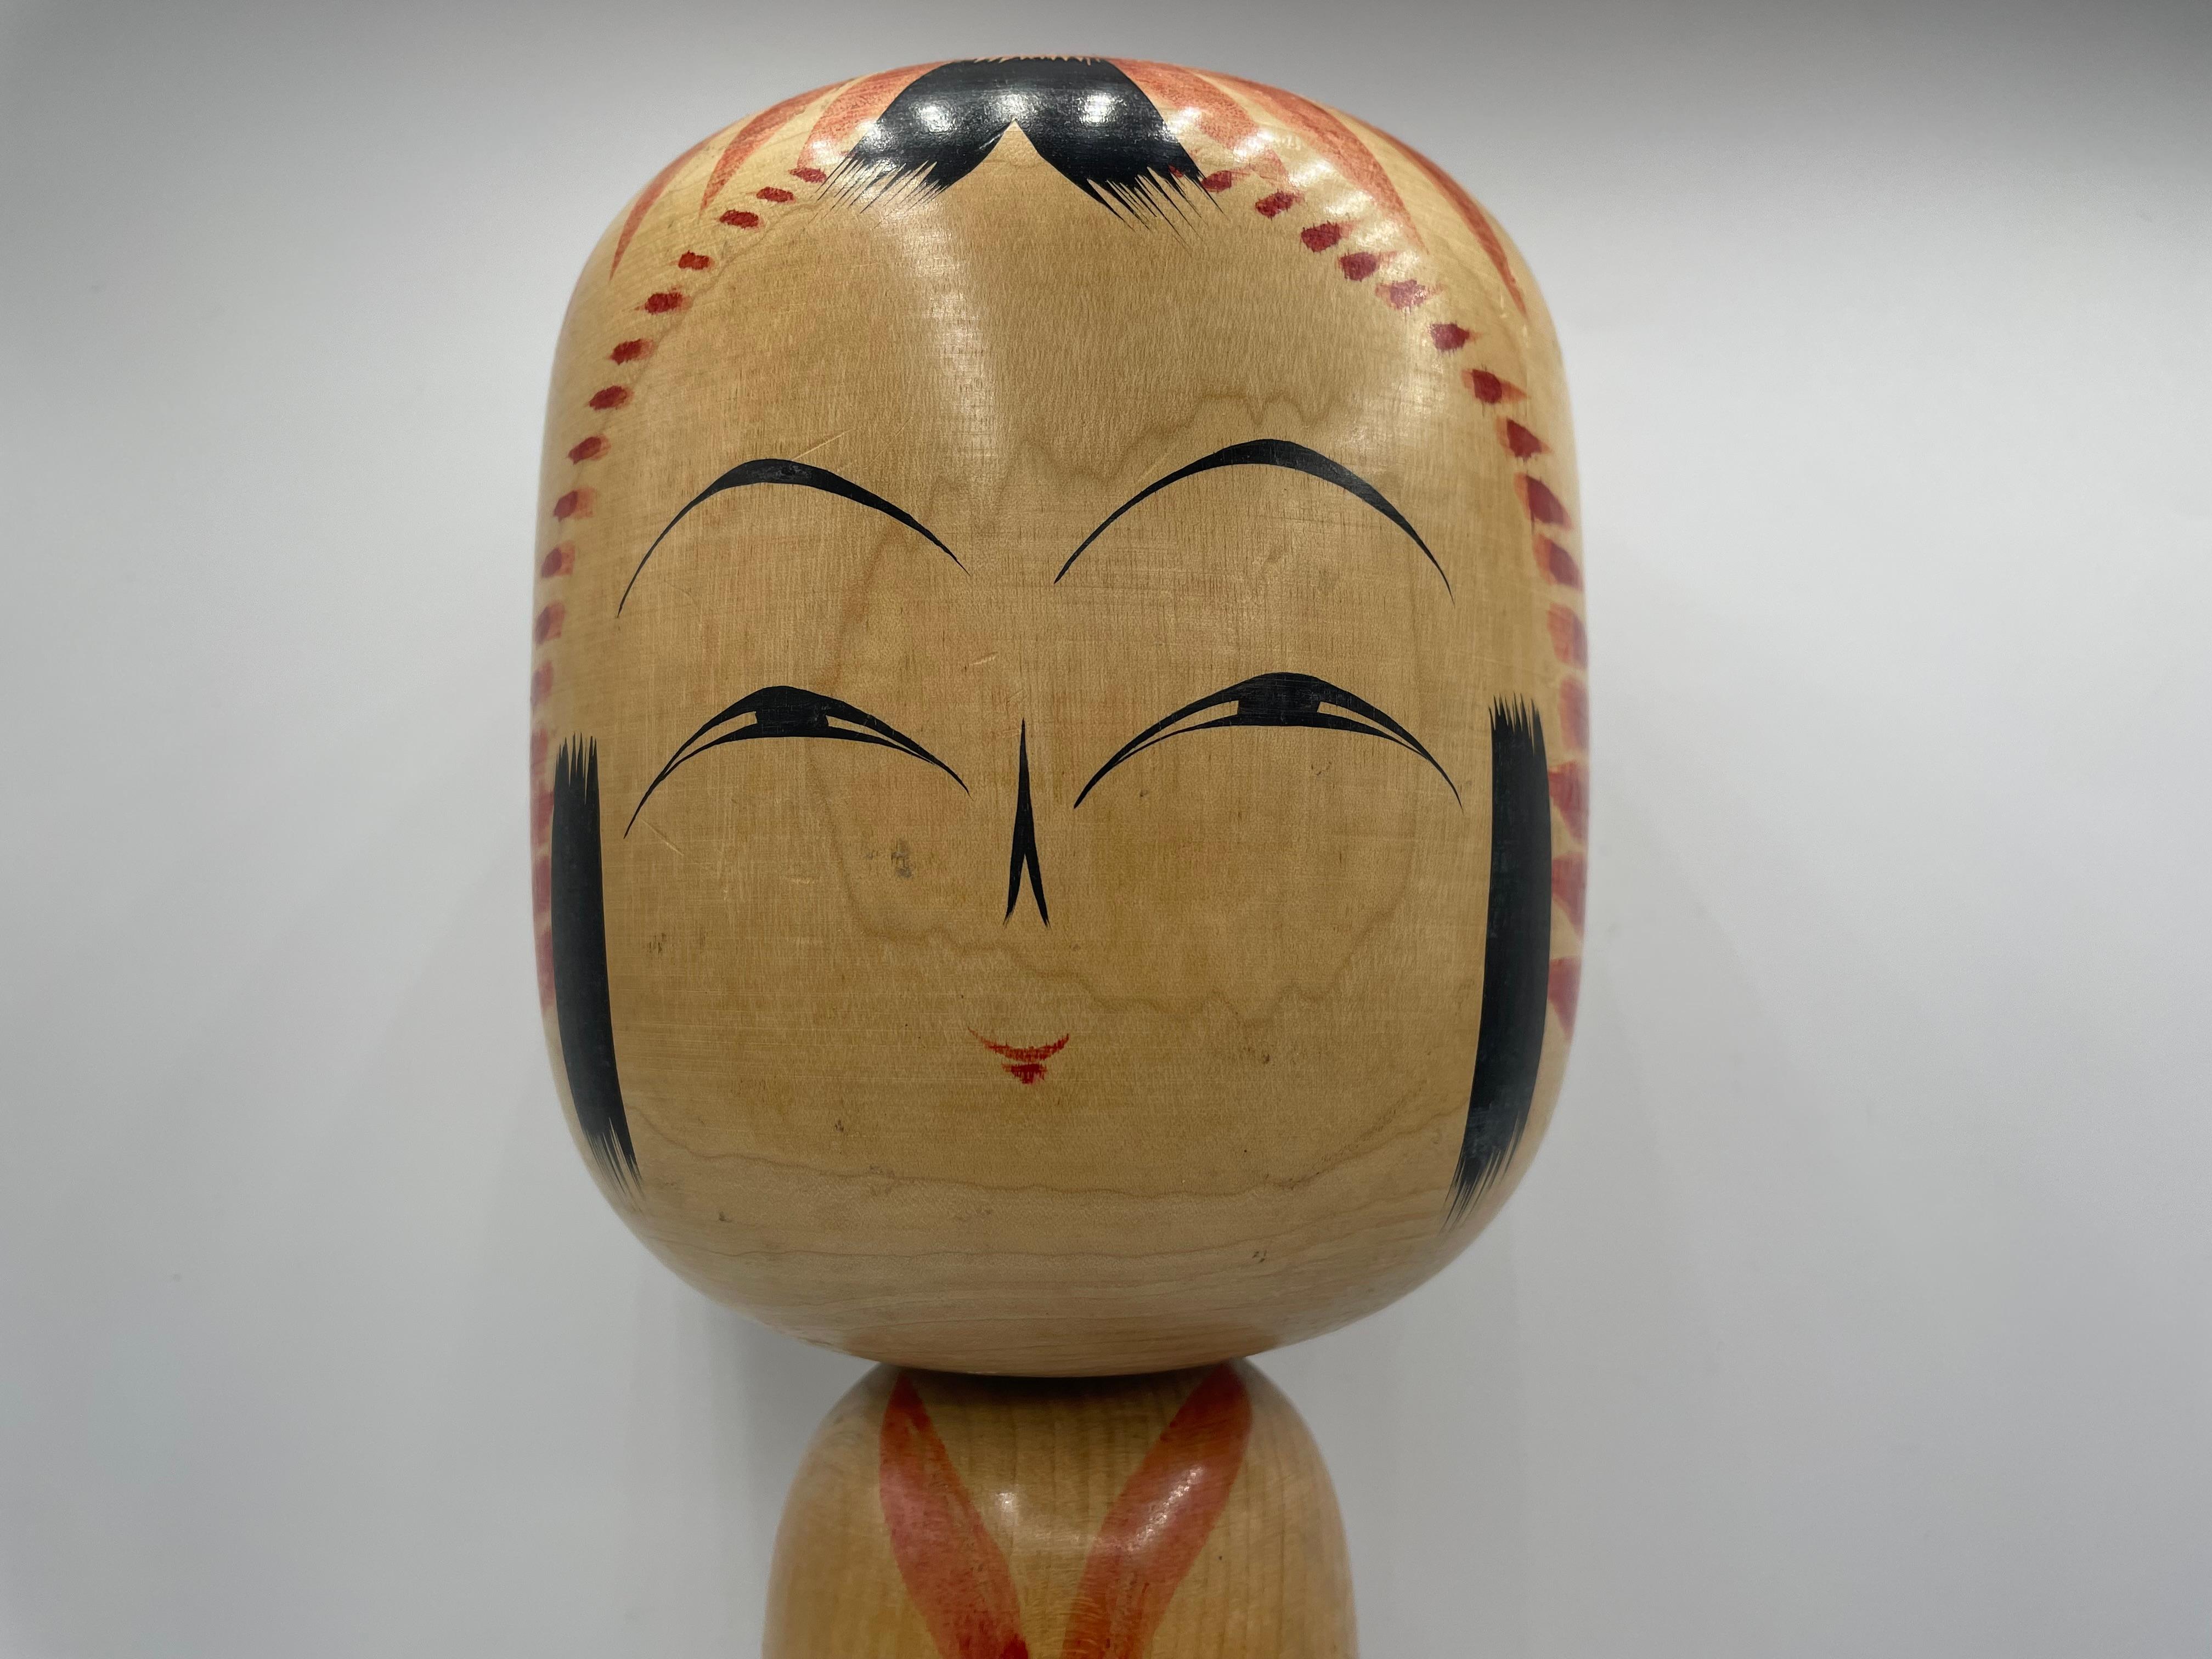 Dies ist eine Holzpuppe, die auf Japanisch Kokeshi genannt wird.
Dieses Kokeshi wurde in Japan in den 1970er Jahren vom Kokeshi-Künstler Kyuichi OMORI hergestellt.
Er wurde am 30. November 1932 geboren. Seine Unterschrift befindet sich auf der